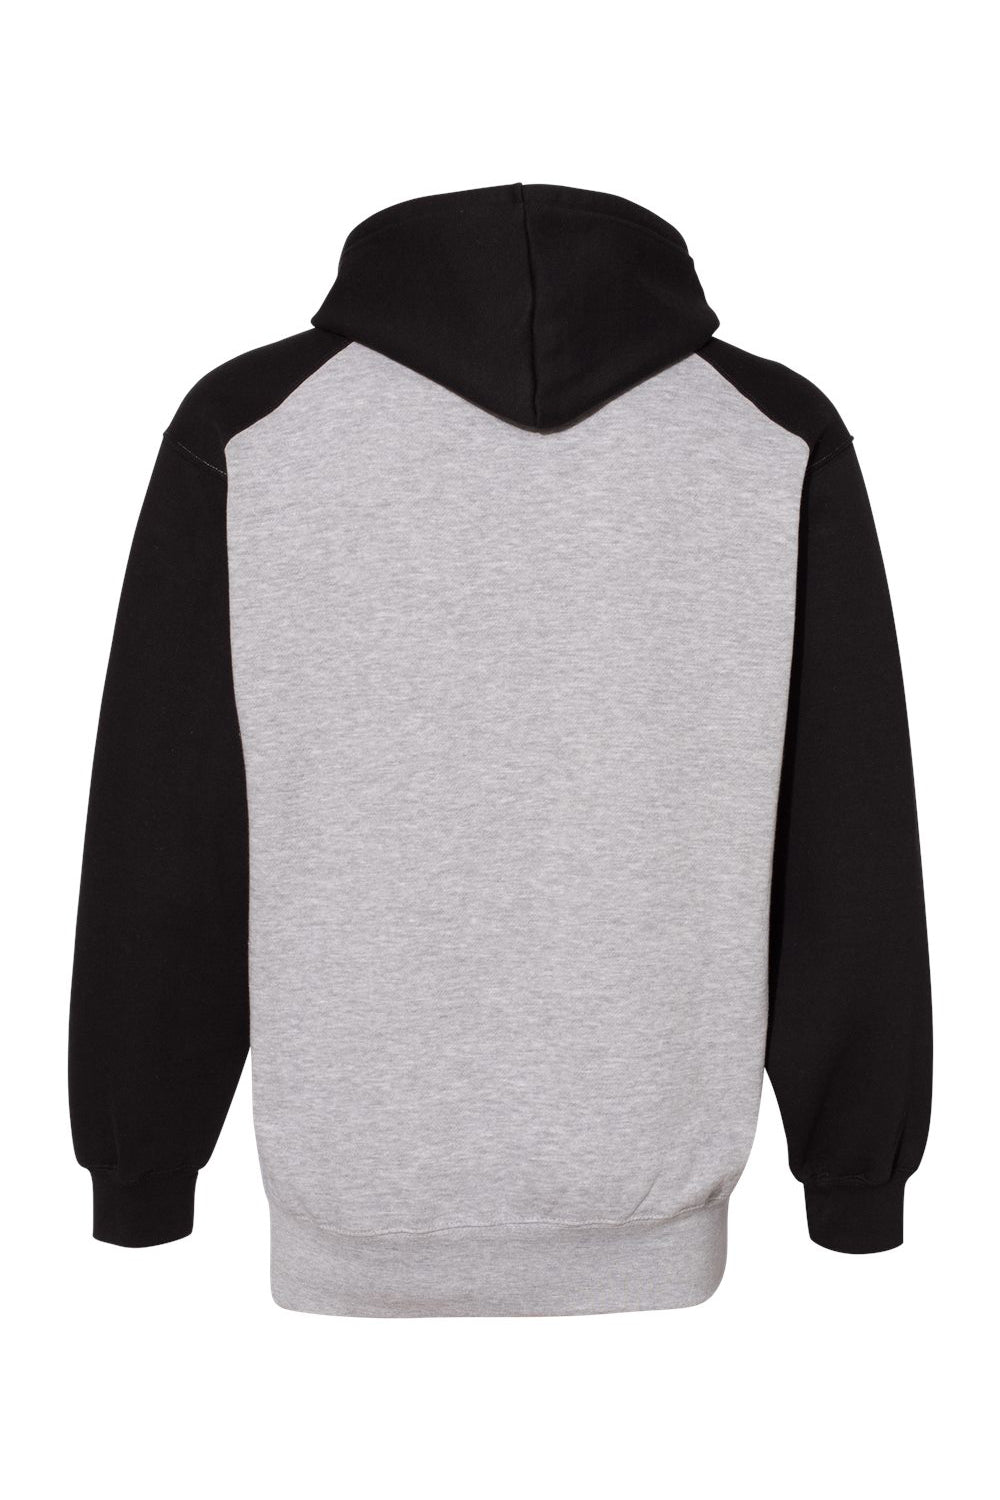 Badger 1249 Mens Athletic Fleece Hooded Sweatshirt Hoodie Oxford Grey/Black Flat Back